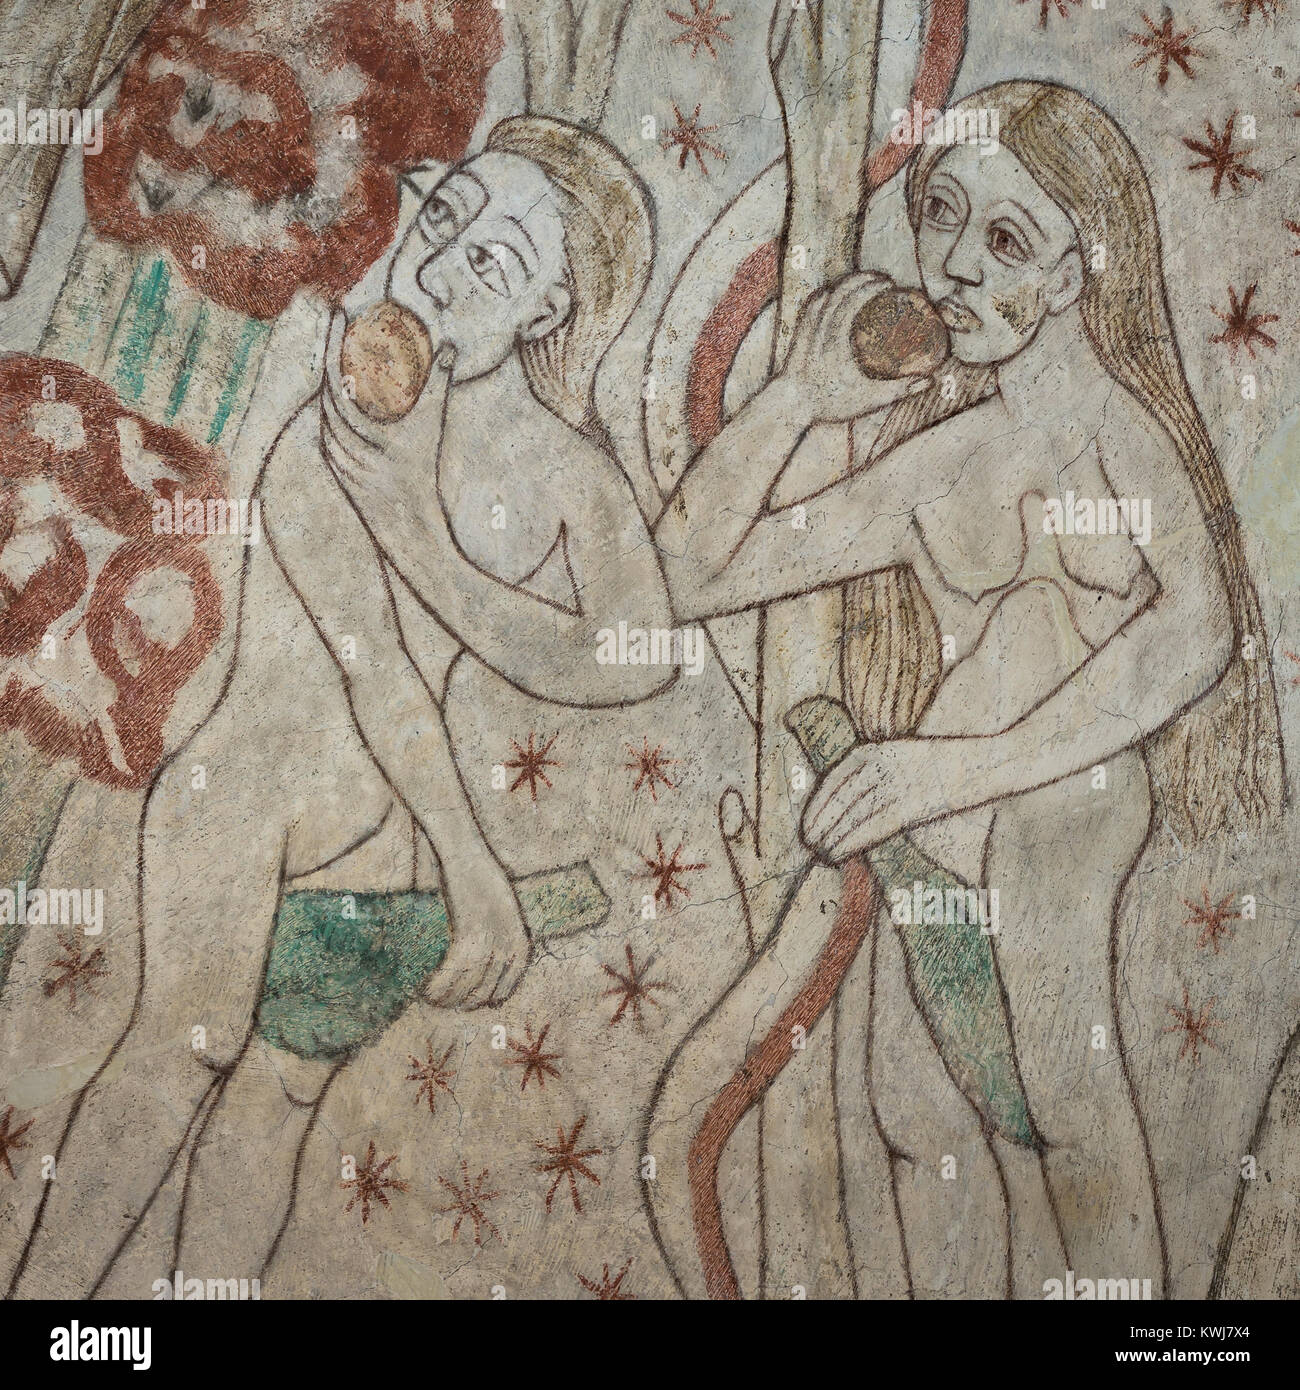 Adam et Eve dans le jardin d'Eden, manger une pomme, une peinture murale médiévale Draby en église, le Danemark, le 2 janvier, 2018 Banque D'Images